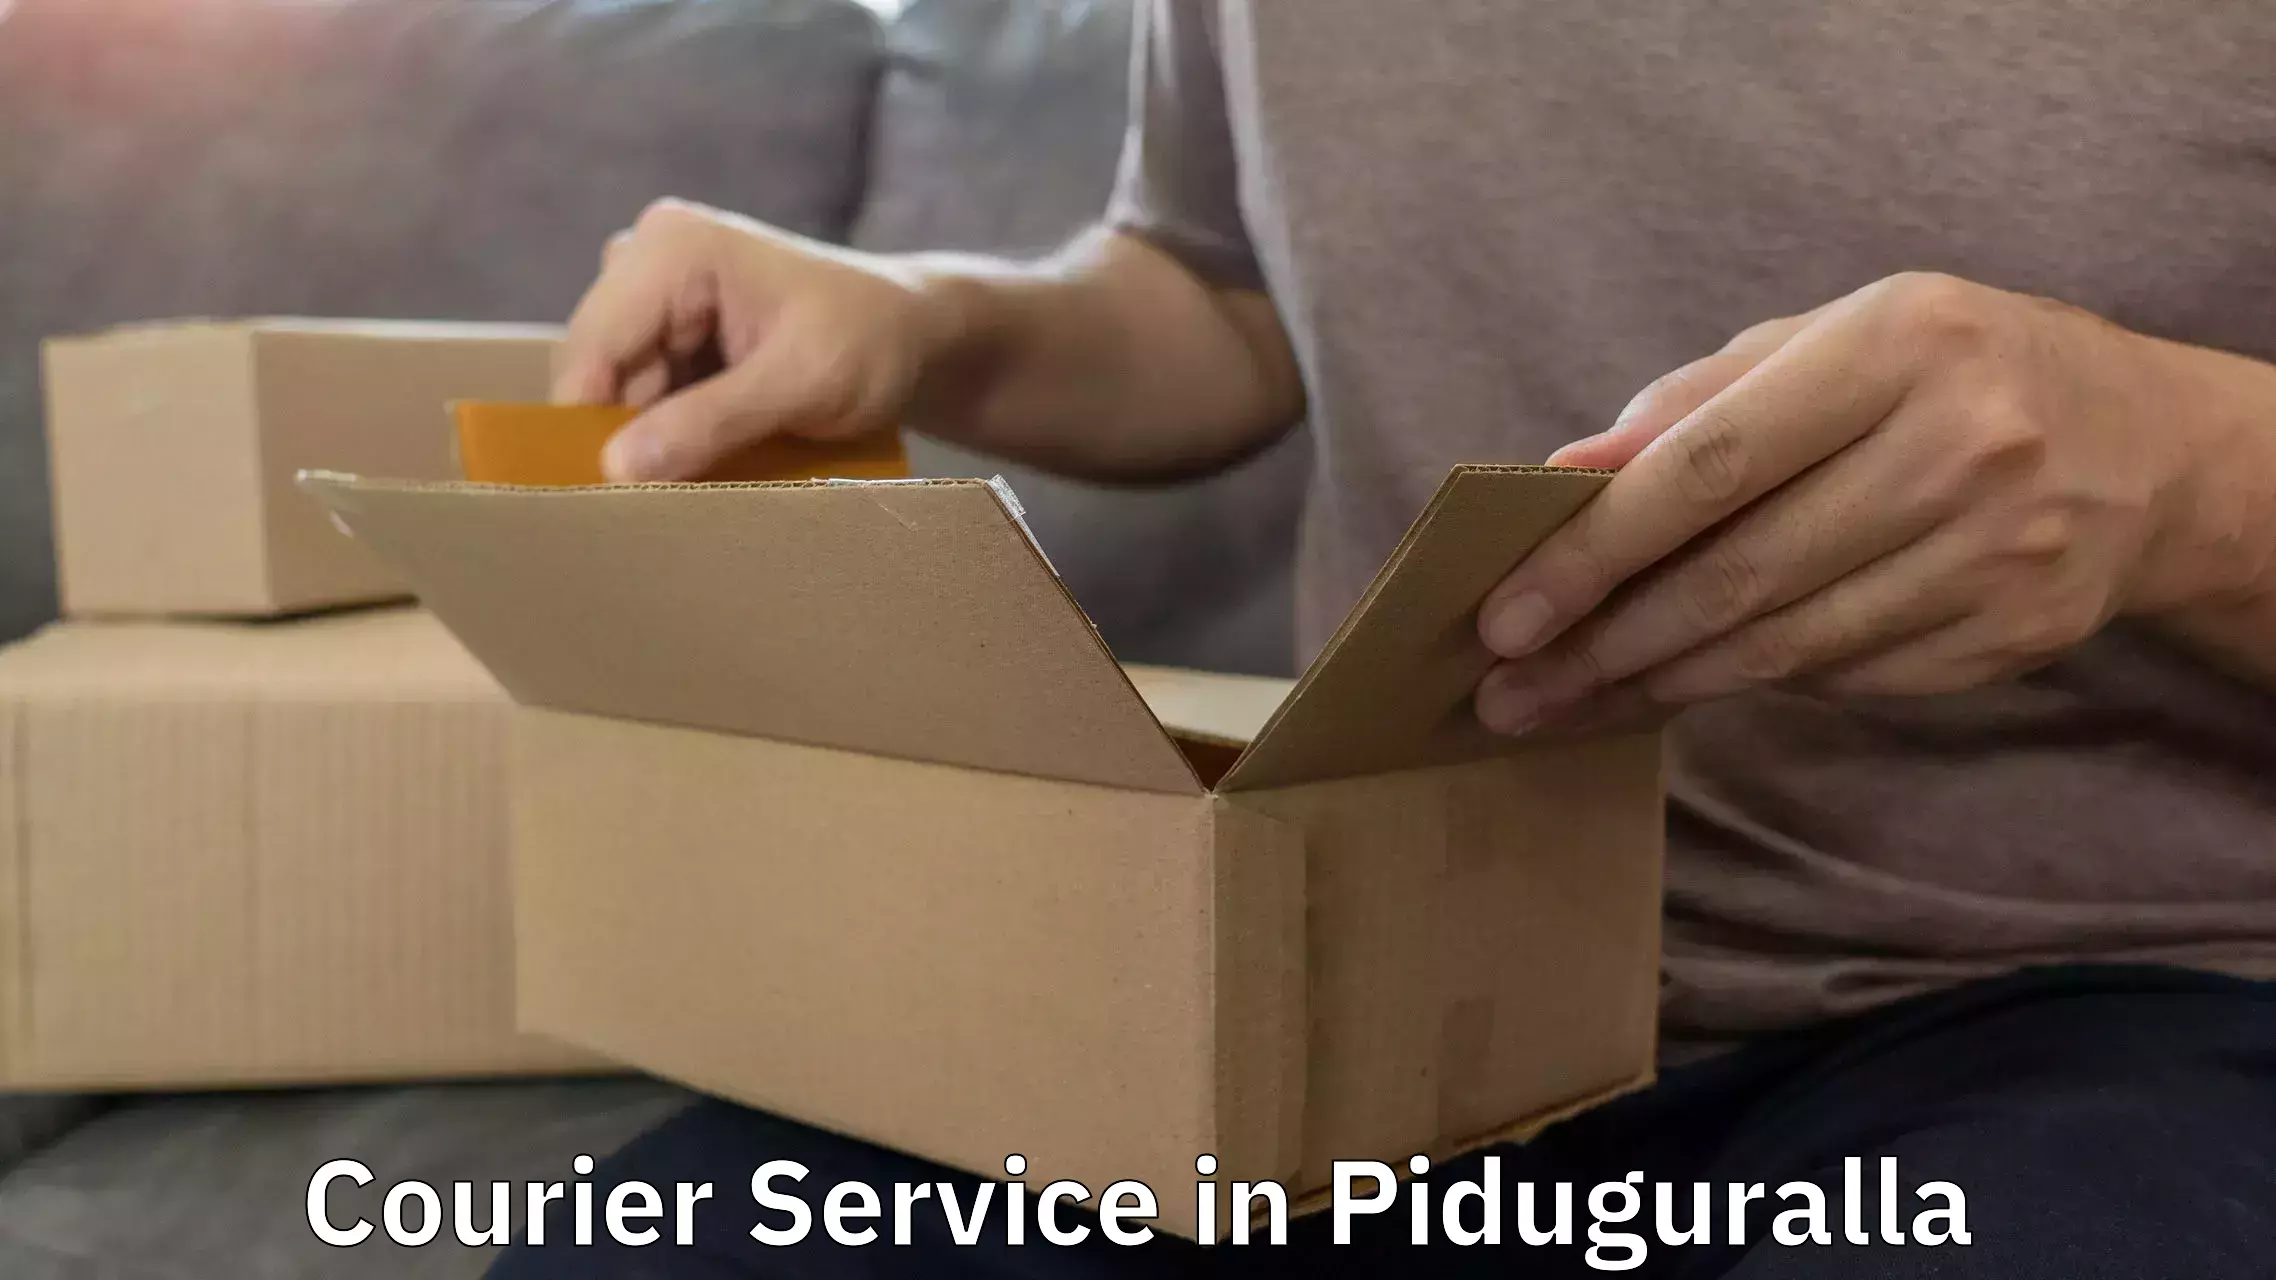 Comprehensive logistics solutions in Piduguralla